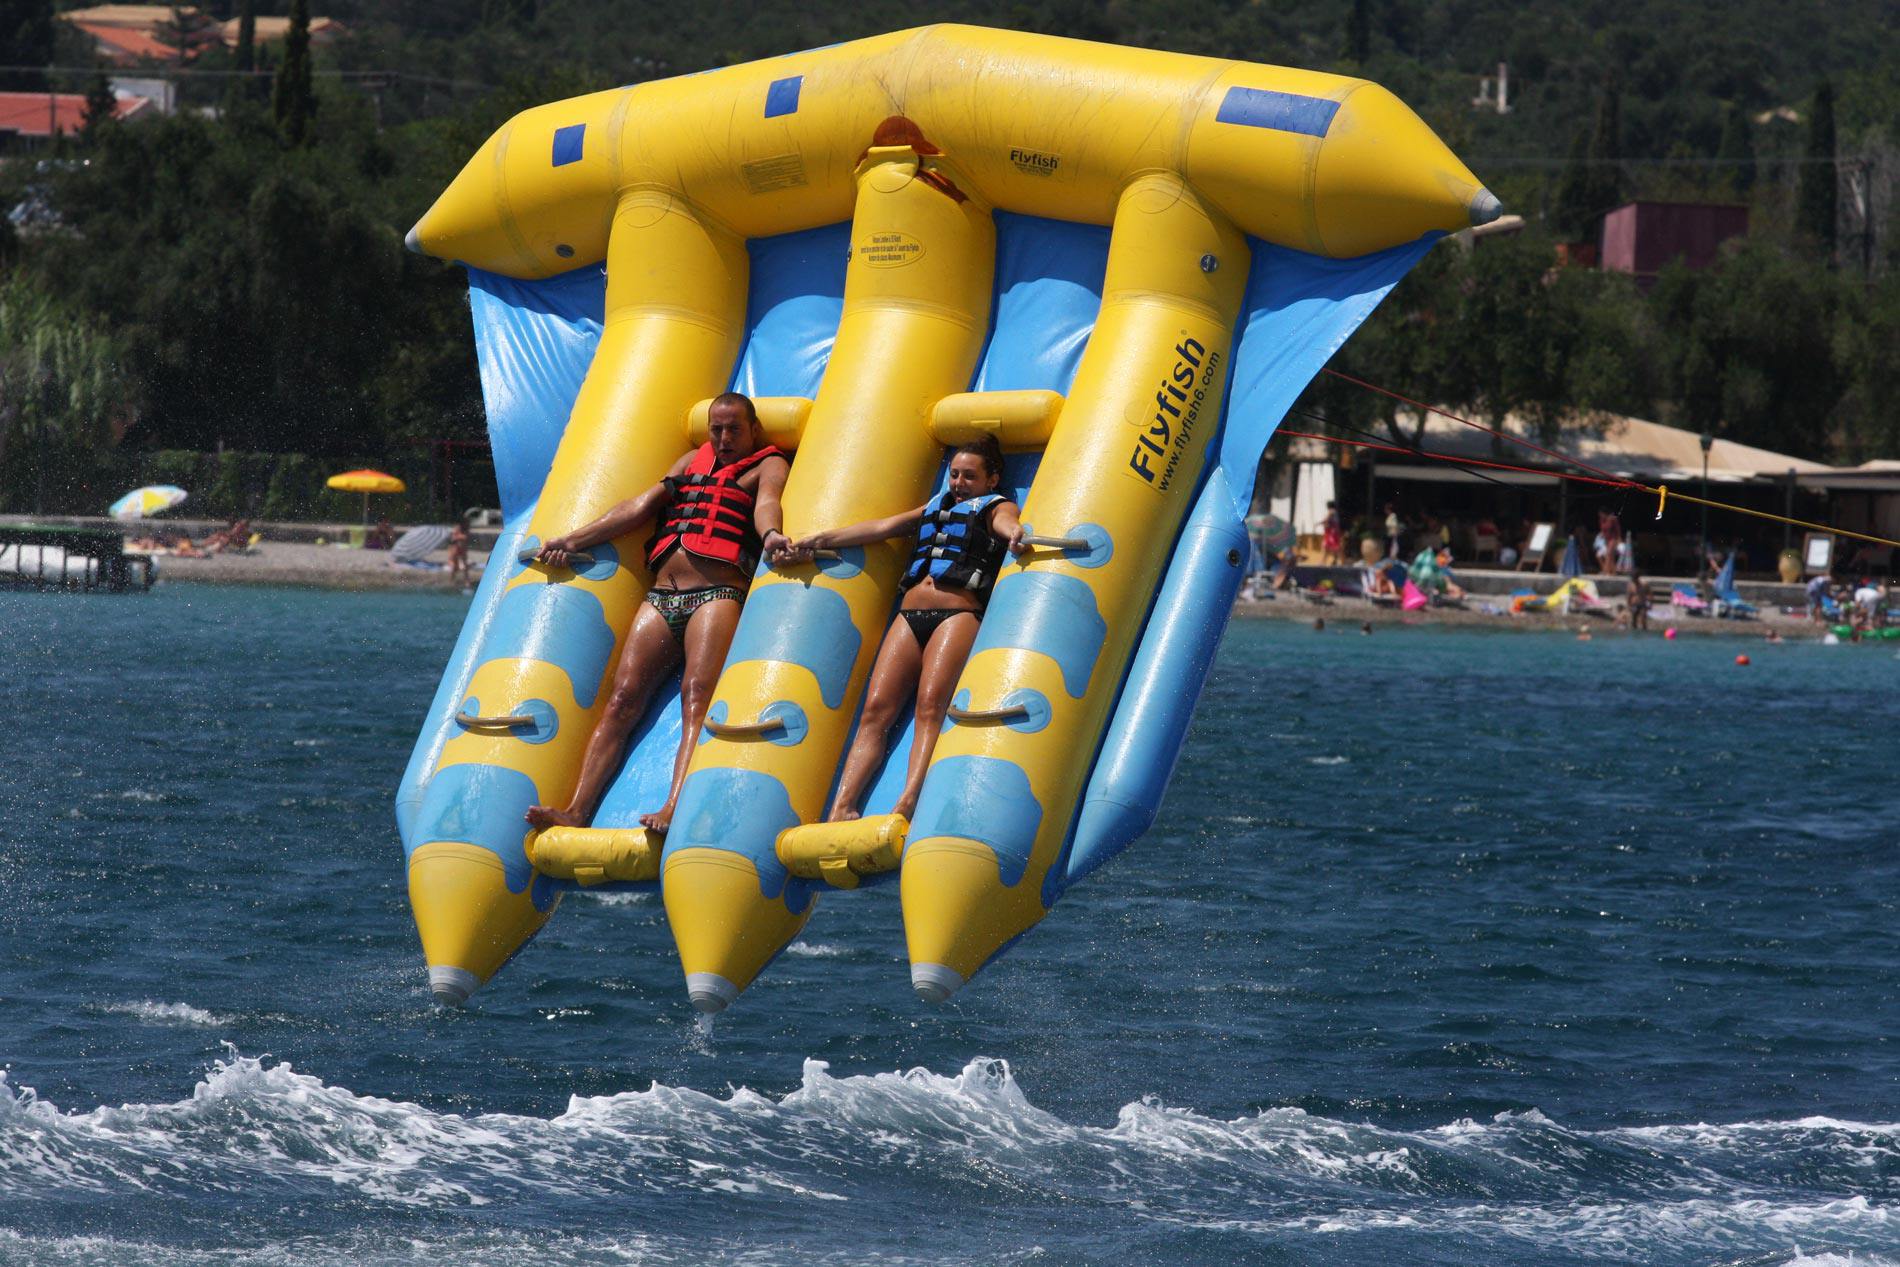 dassia-ski-club-Καλοκαιρινά αθλήματα-Θαλάσσια σπορ-Κέρκυρα-fly-fish-Διασκέδαση-Πλάκα-Δασσιά-Θάλασσα-Καλοκαίρι-Παραλία-Ακτή-Αδρεναλίνη-Σκάφος-Ρυμούλκηση-Κύματα-Άθληση-Παρέα-Φίλοι-Οικογένεια-Καλοκαίρι-στην-Κέρκυρα-Διακοπές-Εκδρομή-Ελεύθερος χρόνος-Σπάστε-Πλάκα-Δραστηριότητες